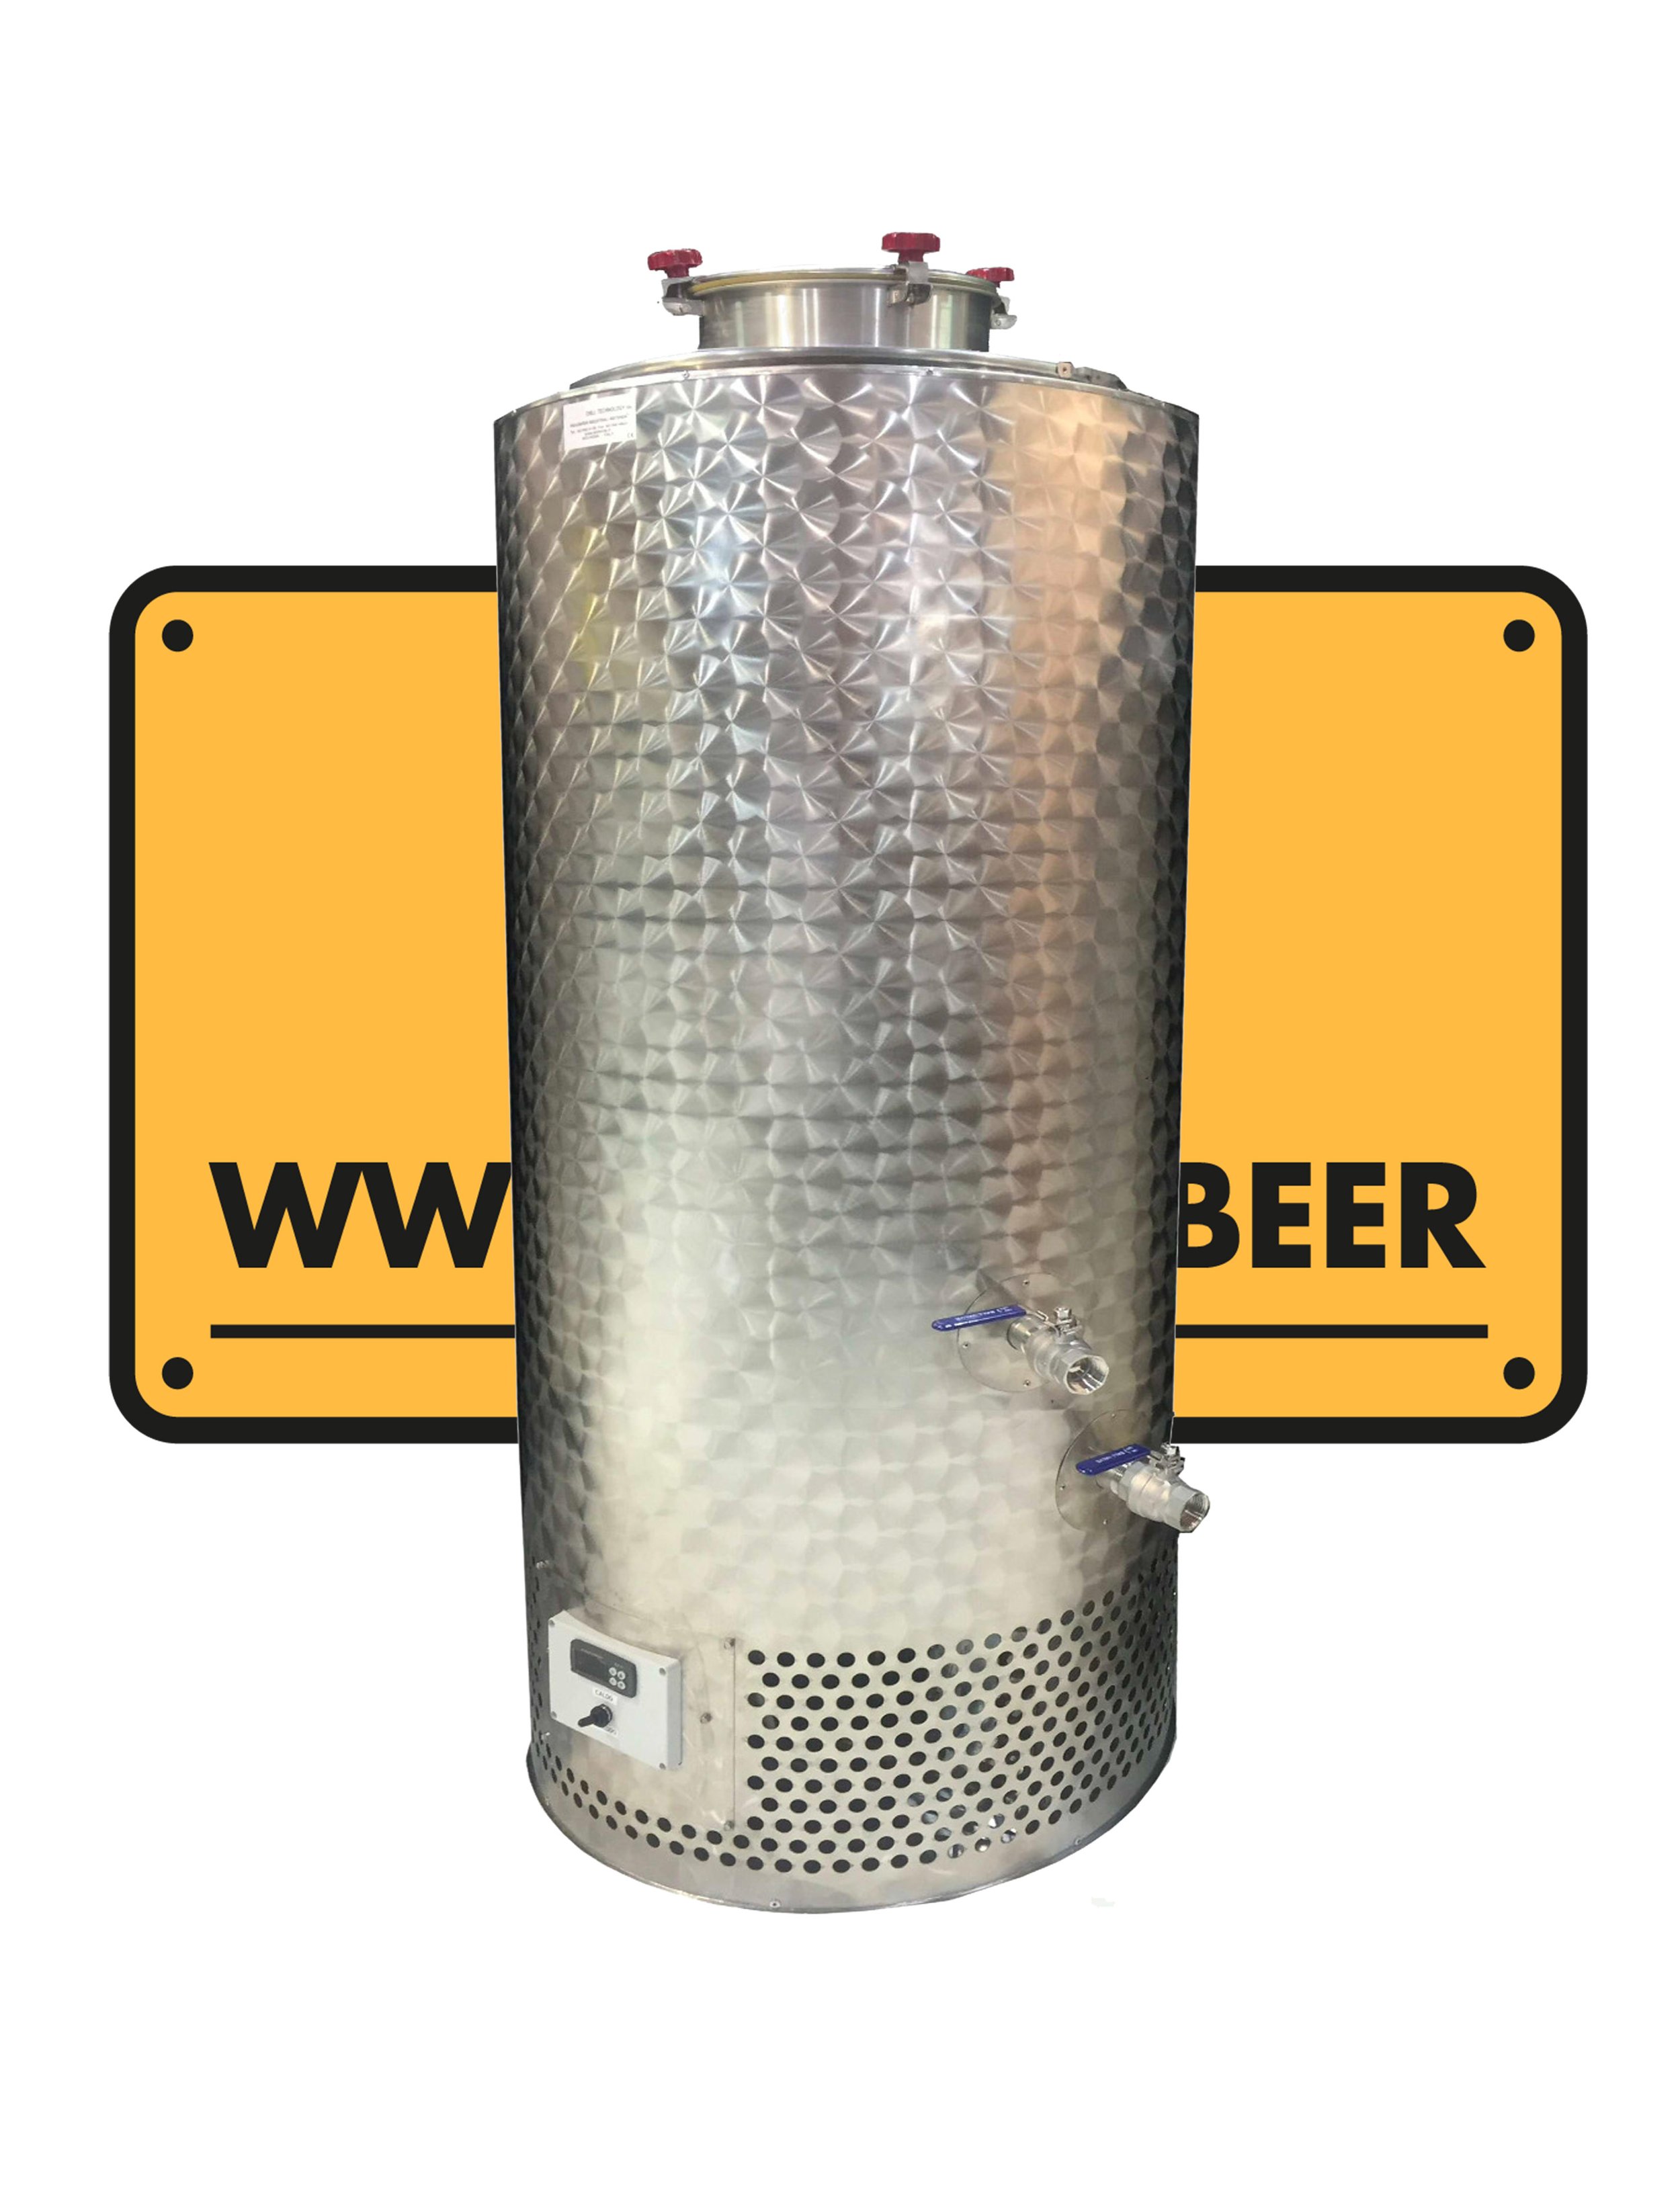 Fermentadores autonomos, elaboración de cerveza artesanal, SlowBeer